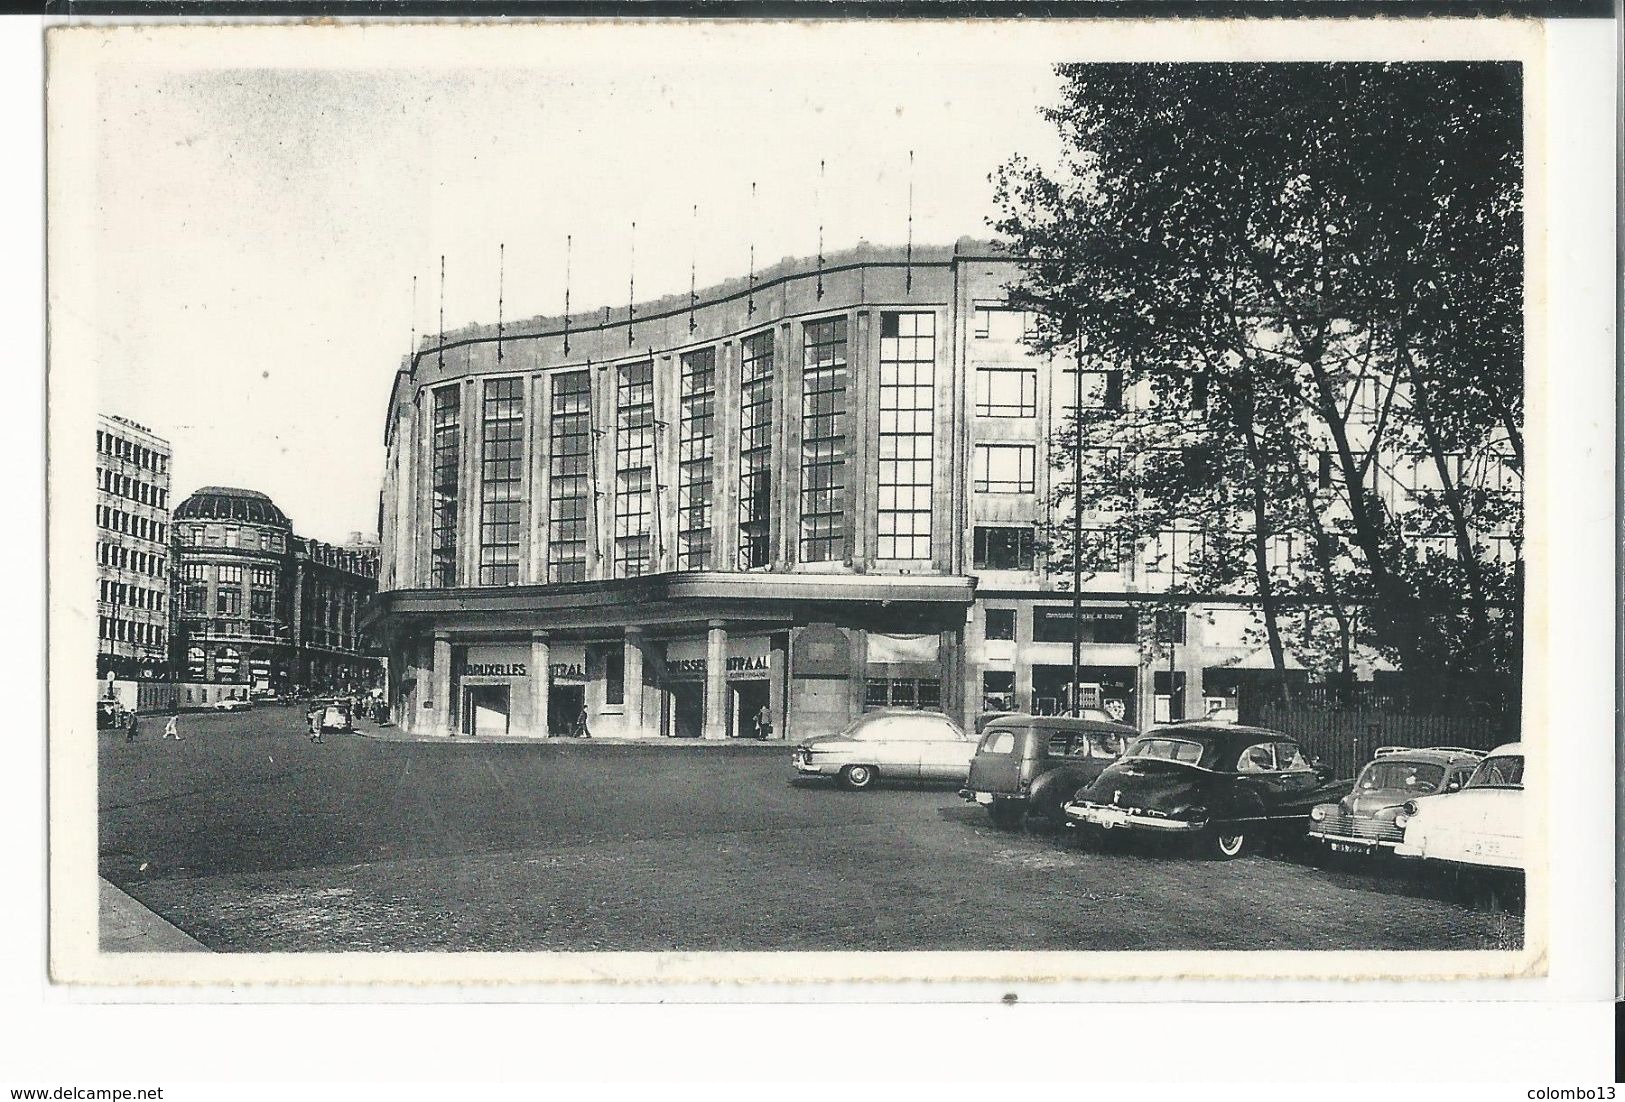 BELGIQUE BRUXELLES GARE CENTRALE 1955 - Schienenverkehr - Bahnhöfe